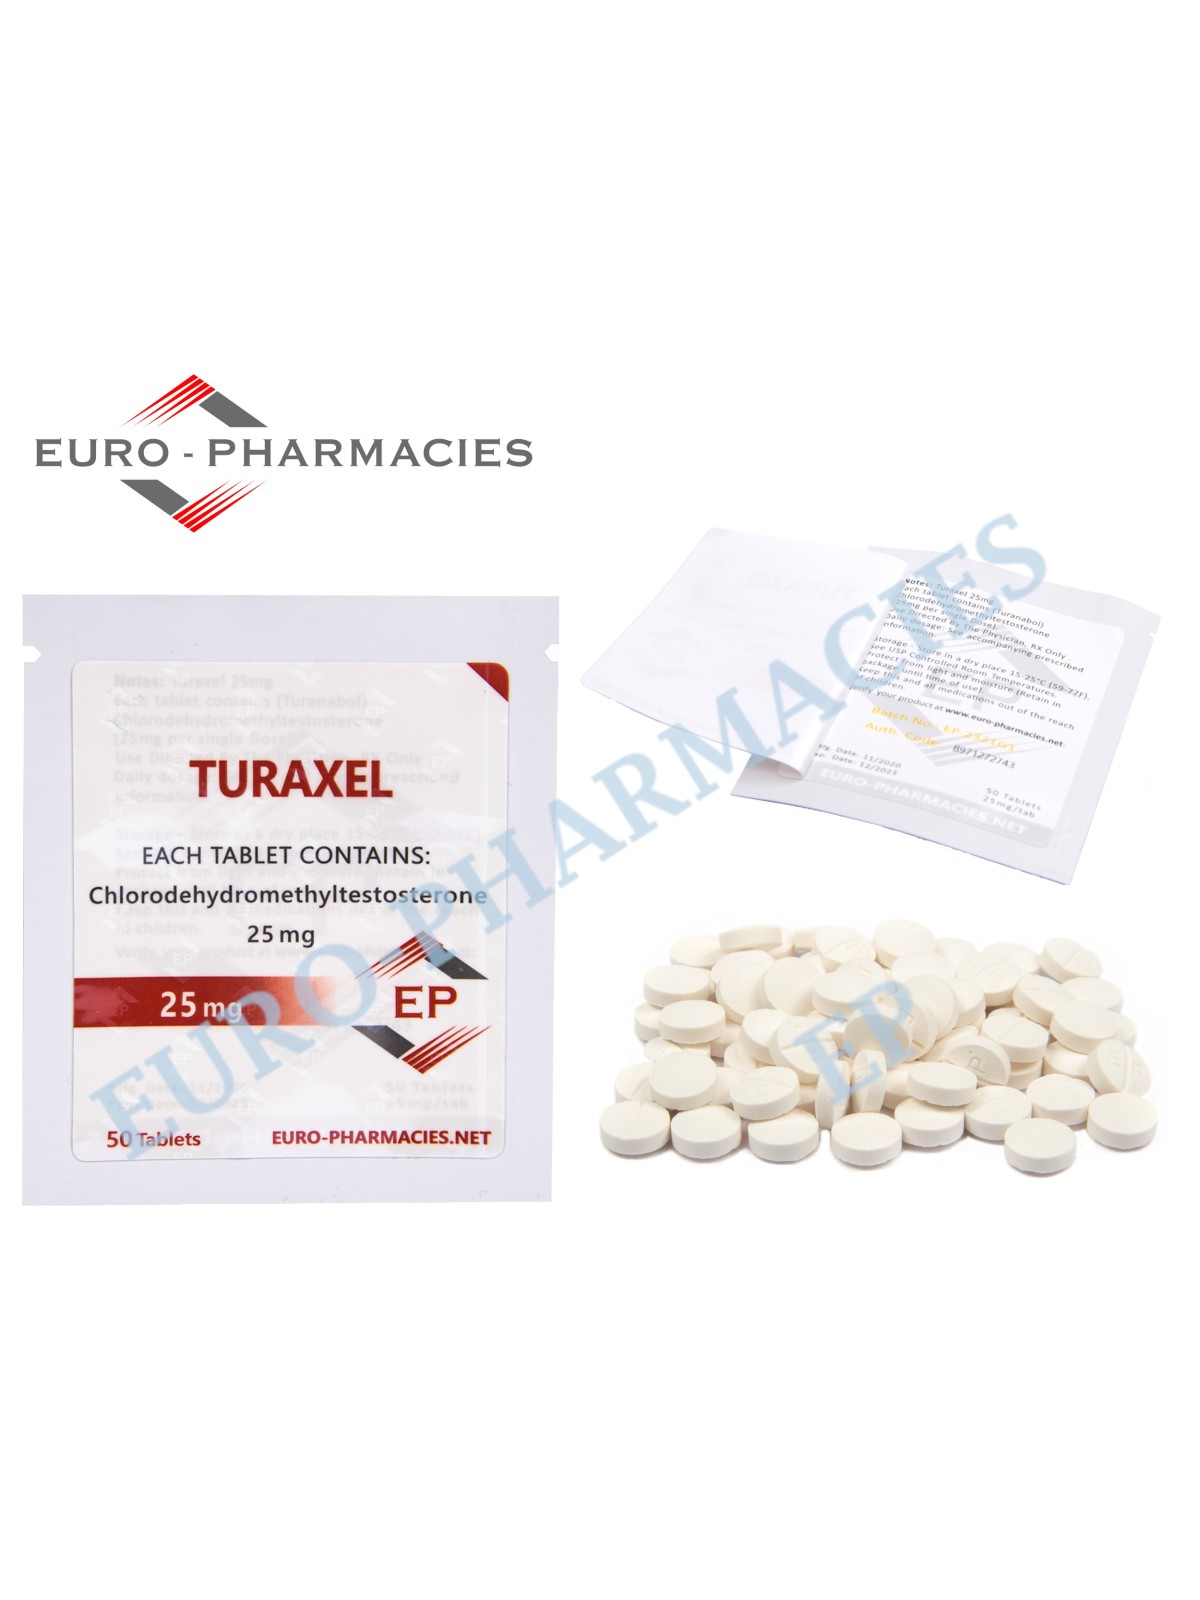 Turaxel (Turanabol) - 25mg/tab 50 Tabs/bag - EP - USA